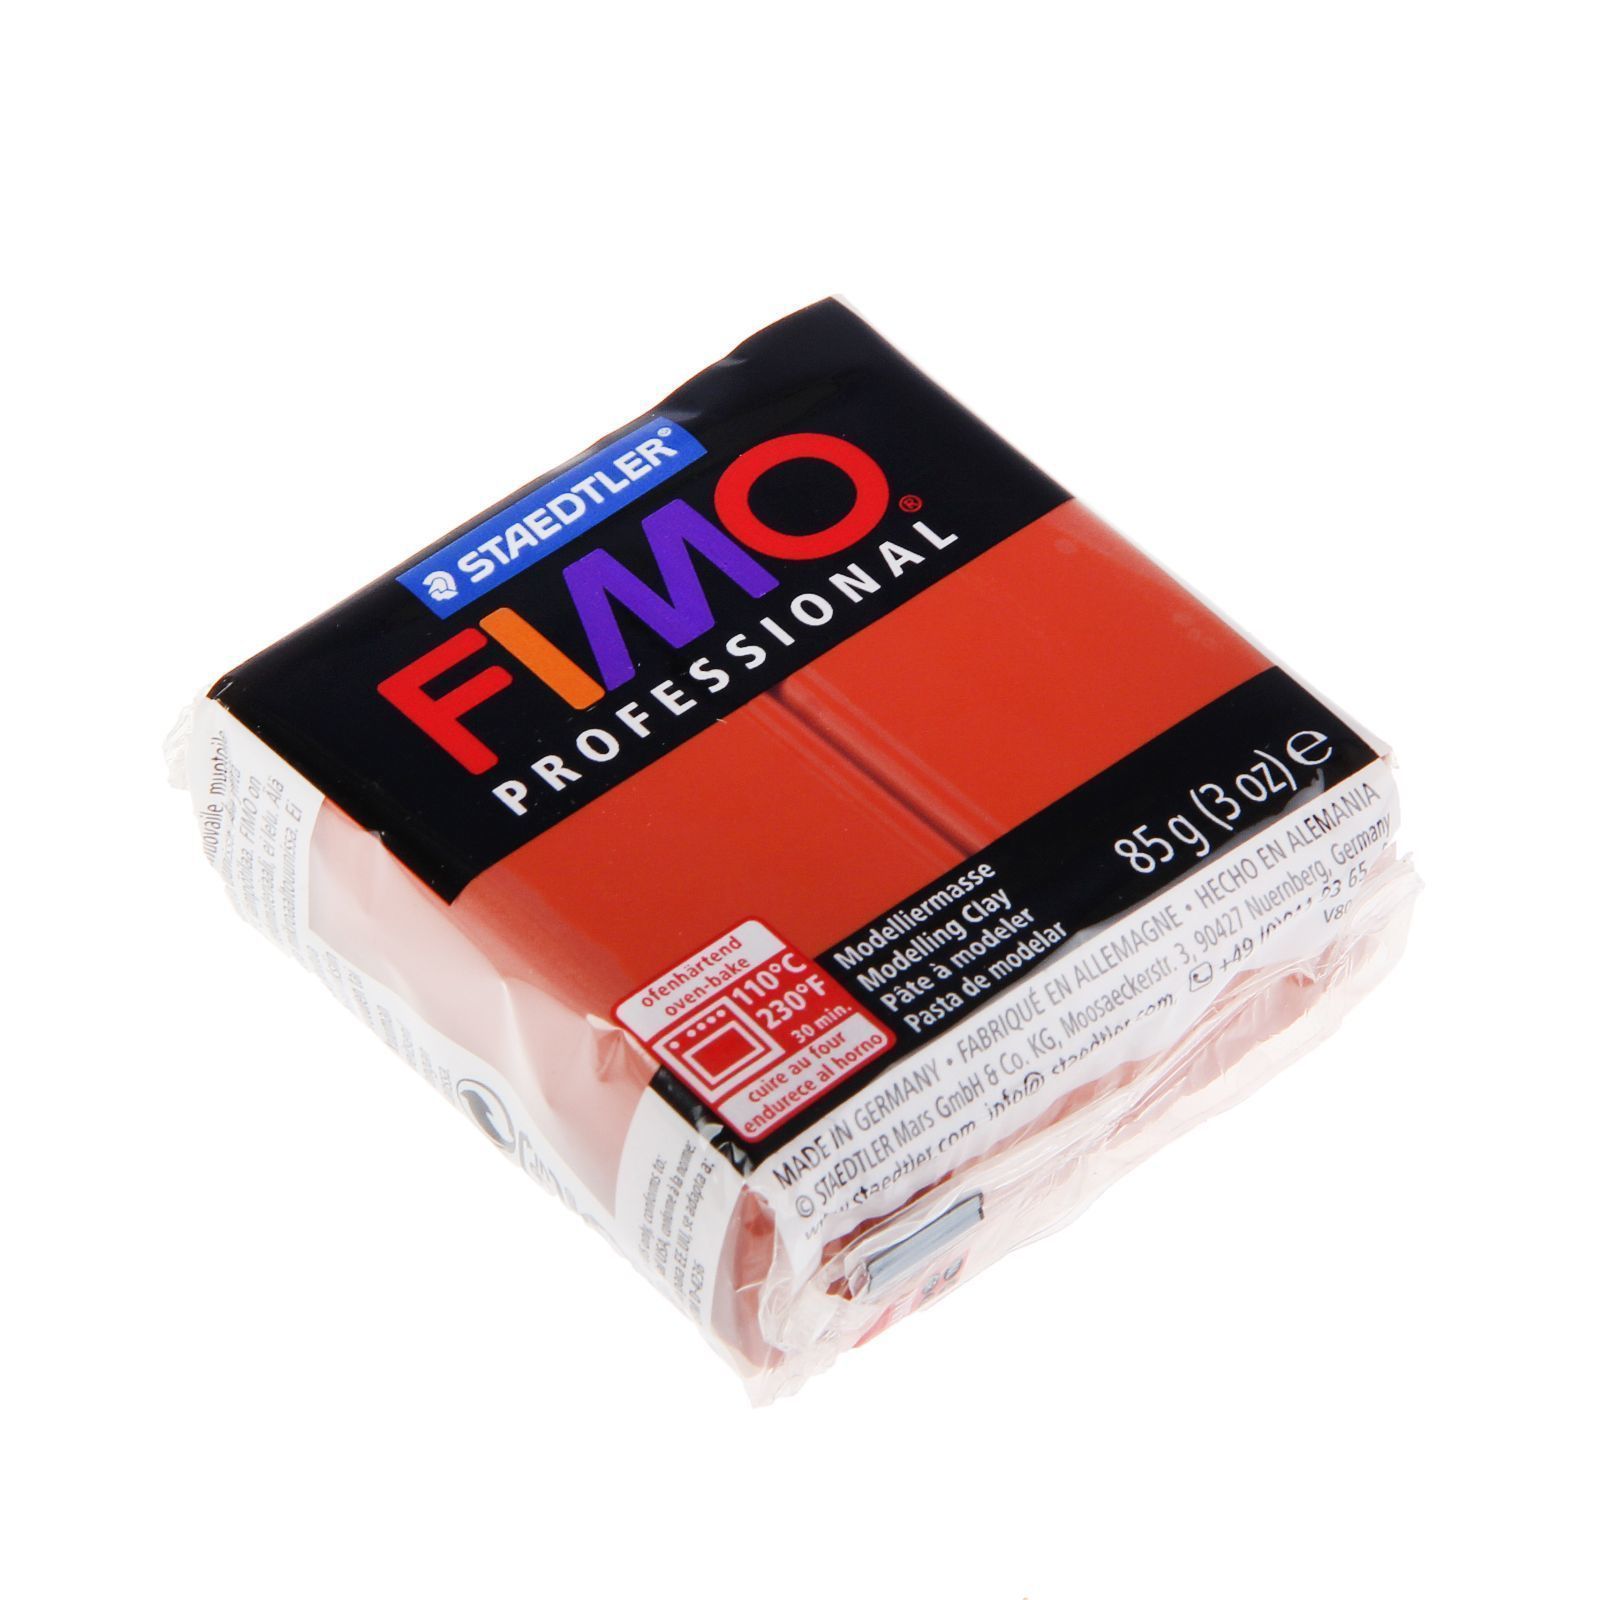 Глина полимерная FIMO Professional запекаемая 85 гр. терракотовый арт. 8004-74 Staedtler